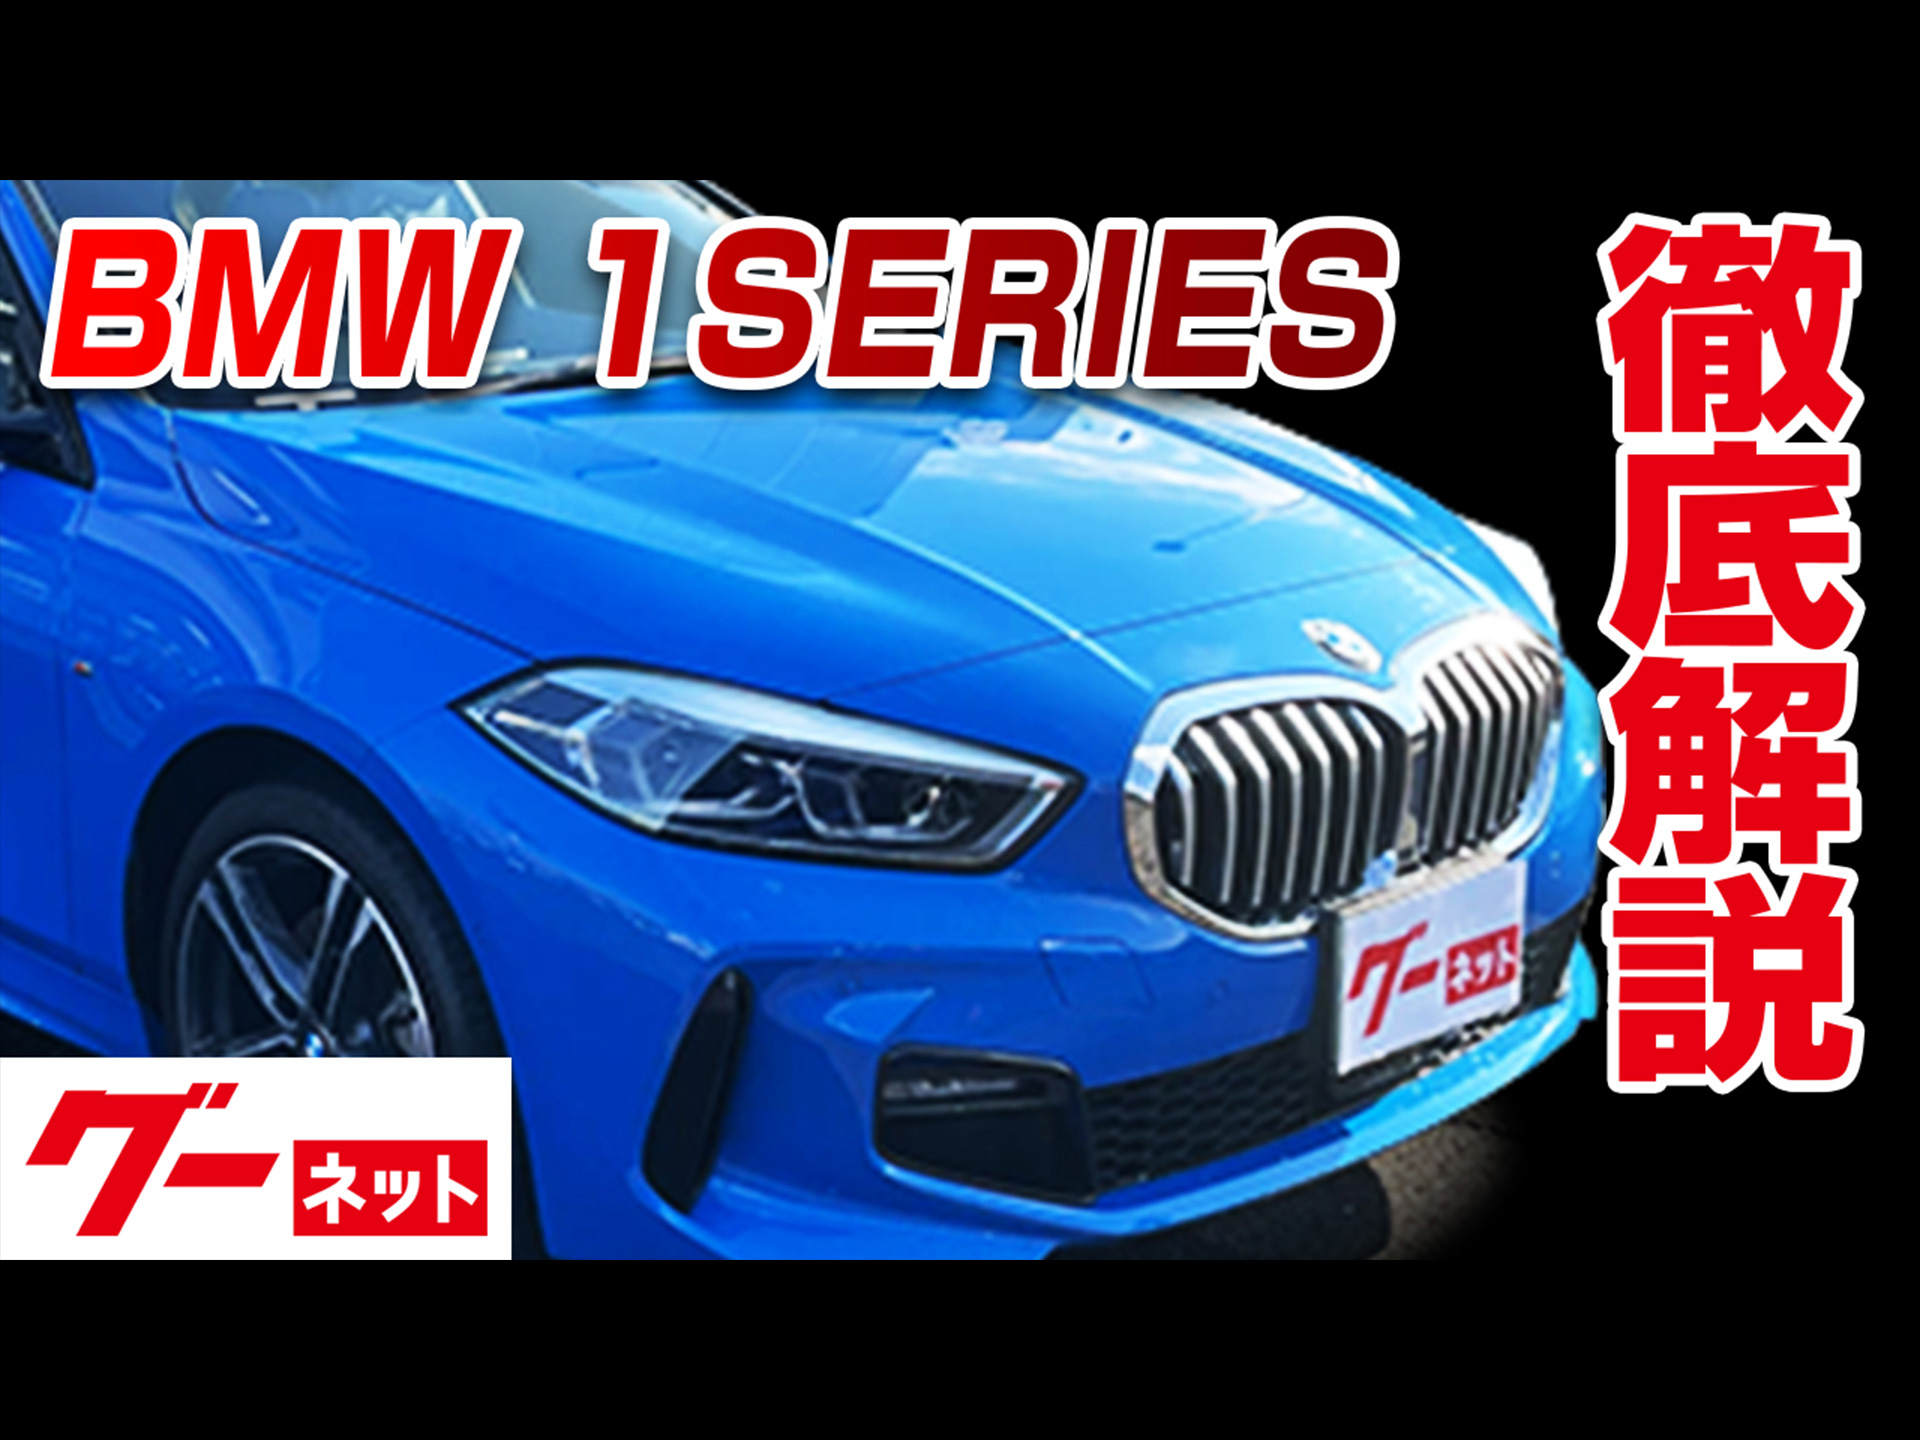 【BMW 1シリーズ】ハッチバック F40 118i Mスポーツ グーネット動画カタログ